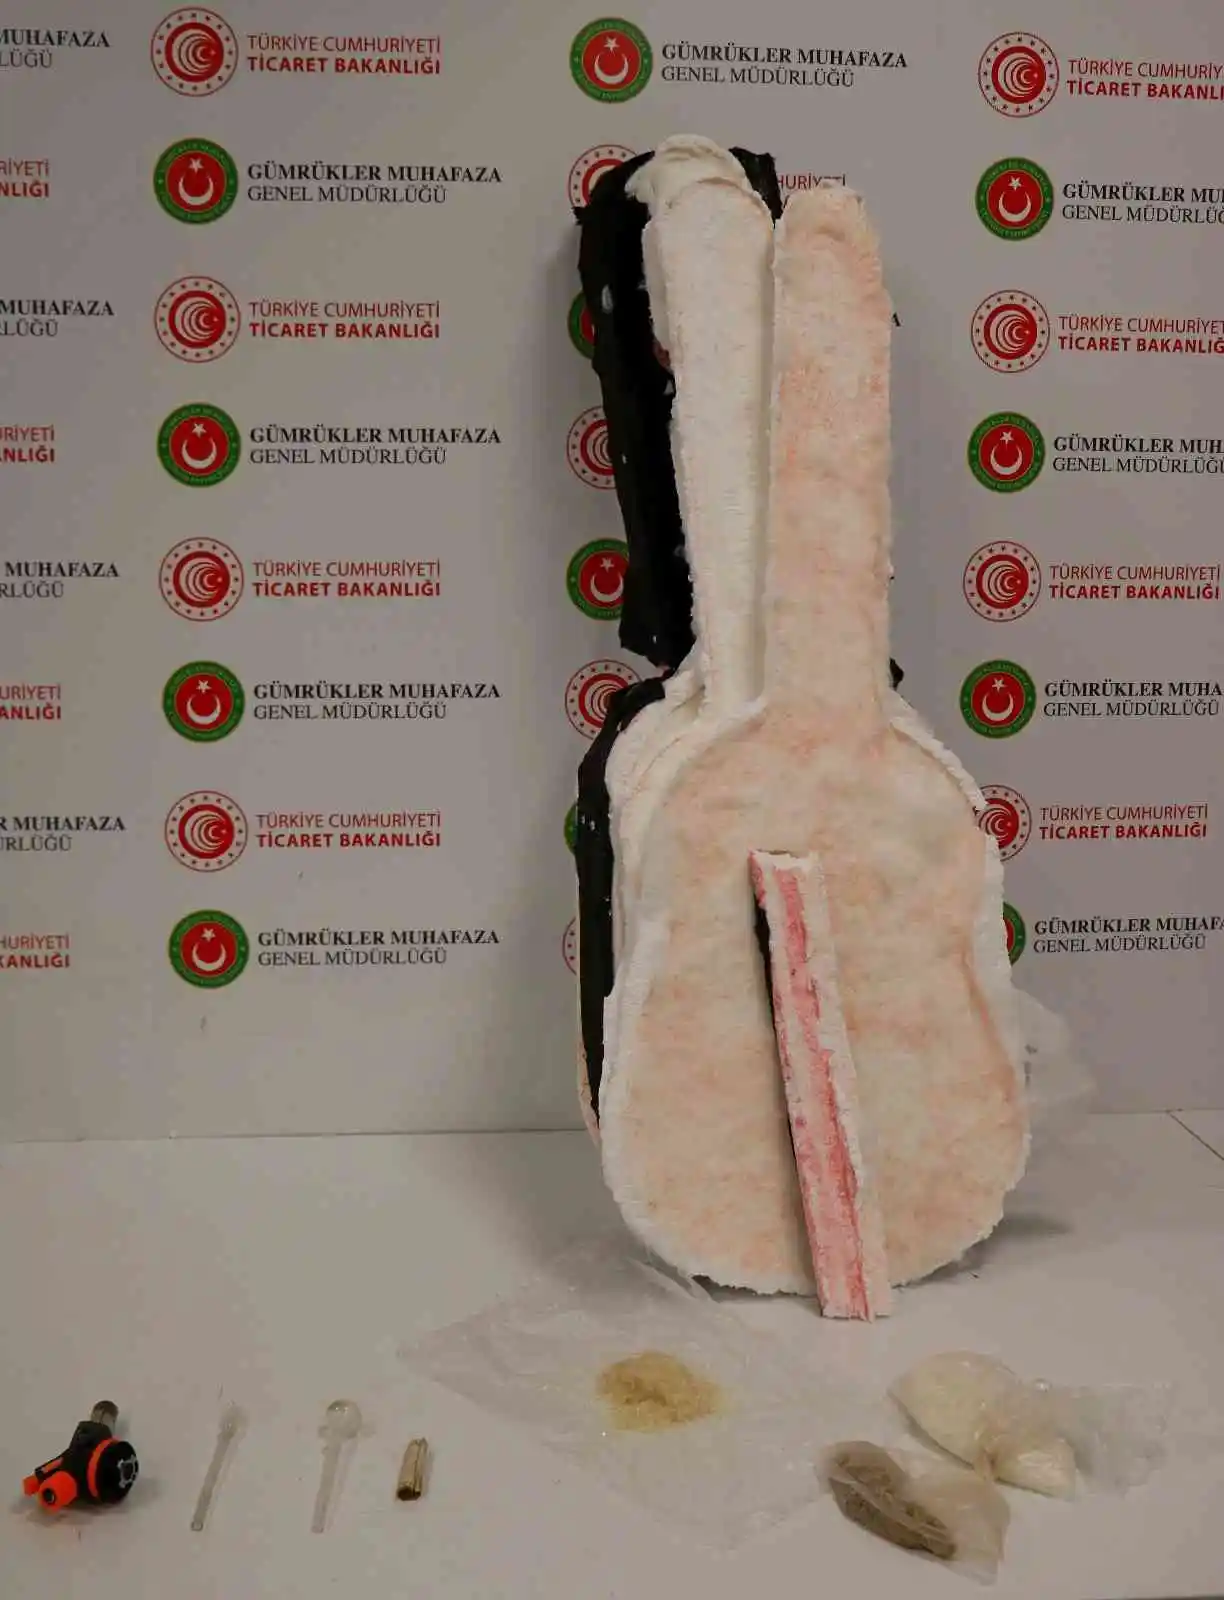 İstanbul Havalimanı’nda uyuşturucu operasyonları: Gitar kılıfından ve terlik tabanından uyuşturucu çıktı
